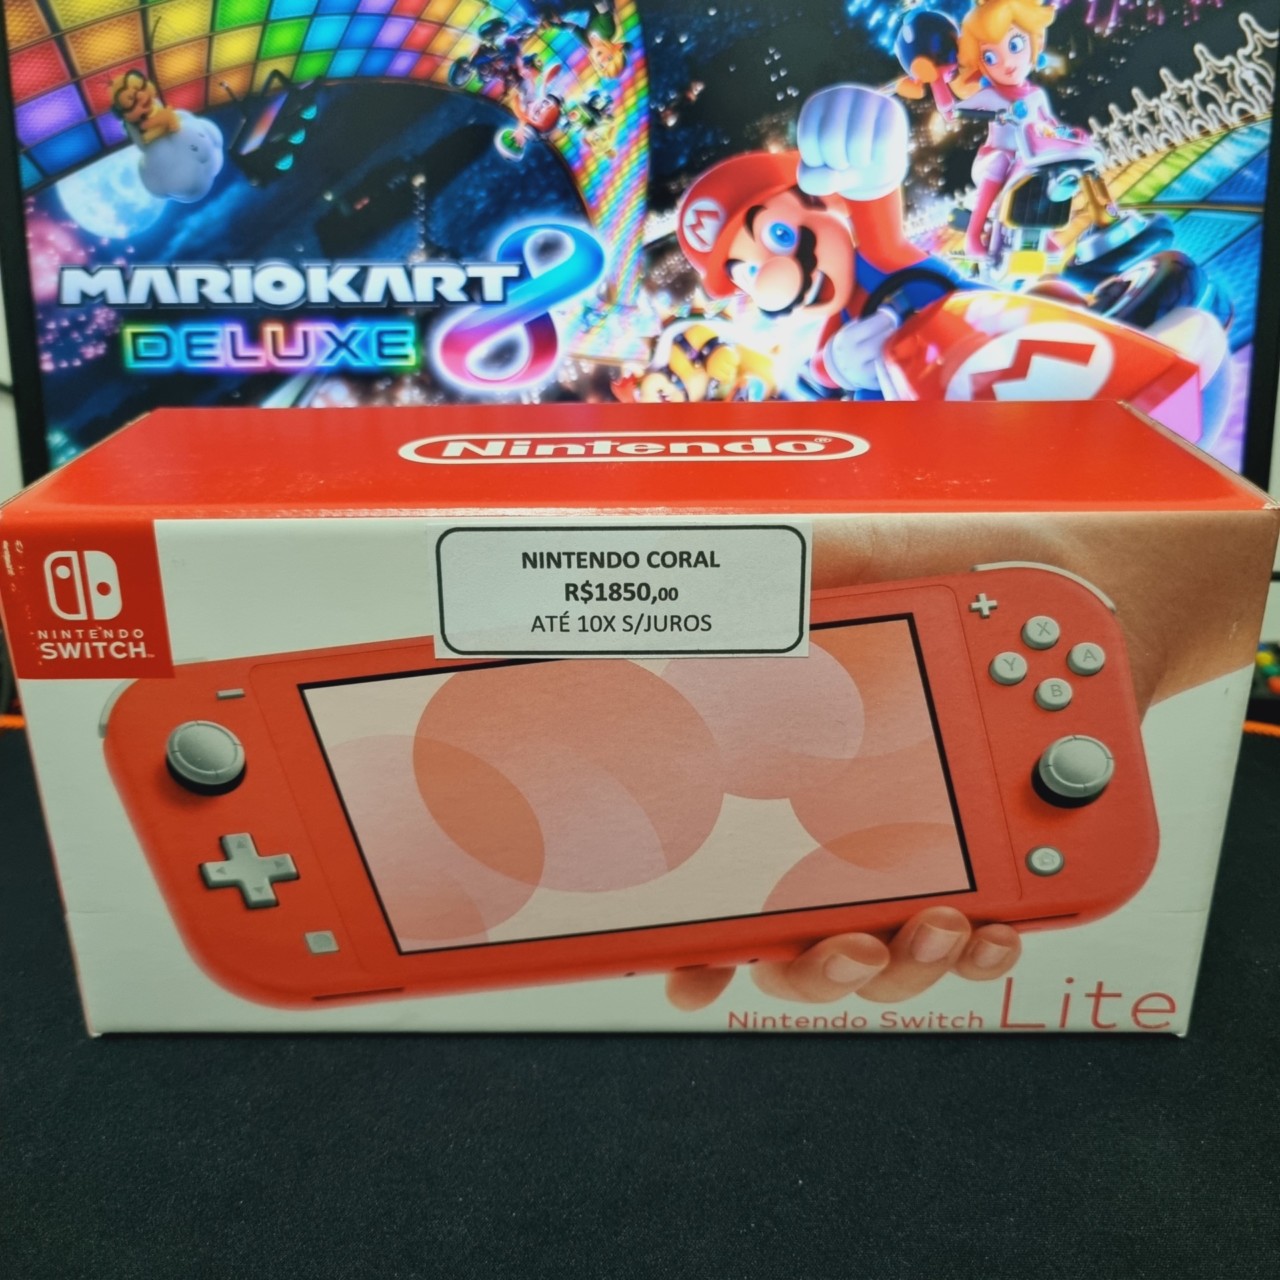 Consola Nintendo Switch V2 Azul/Vermelha + Jogo Mario Kart 8